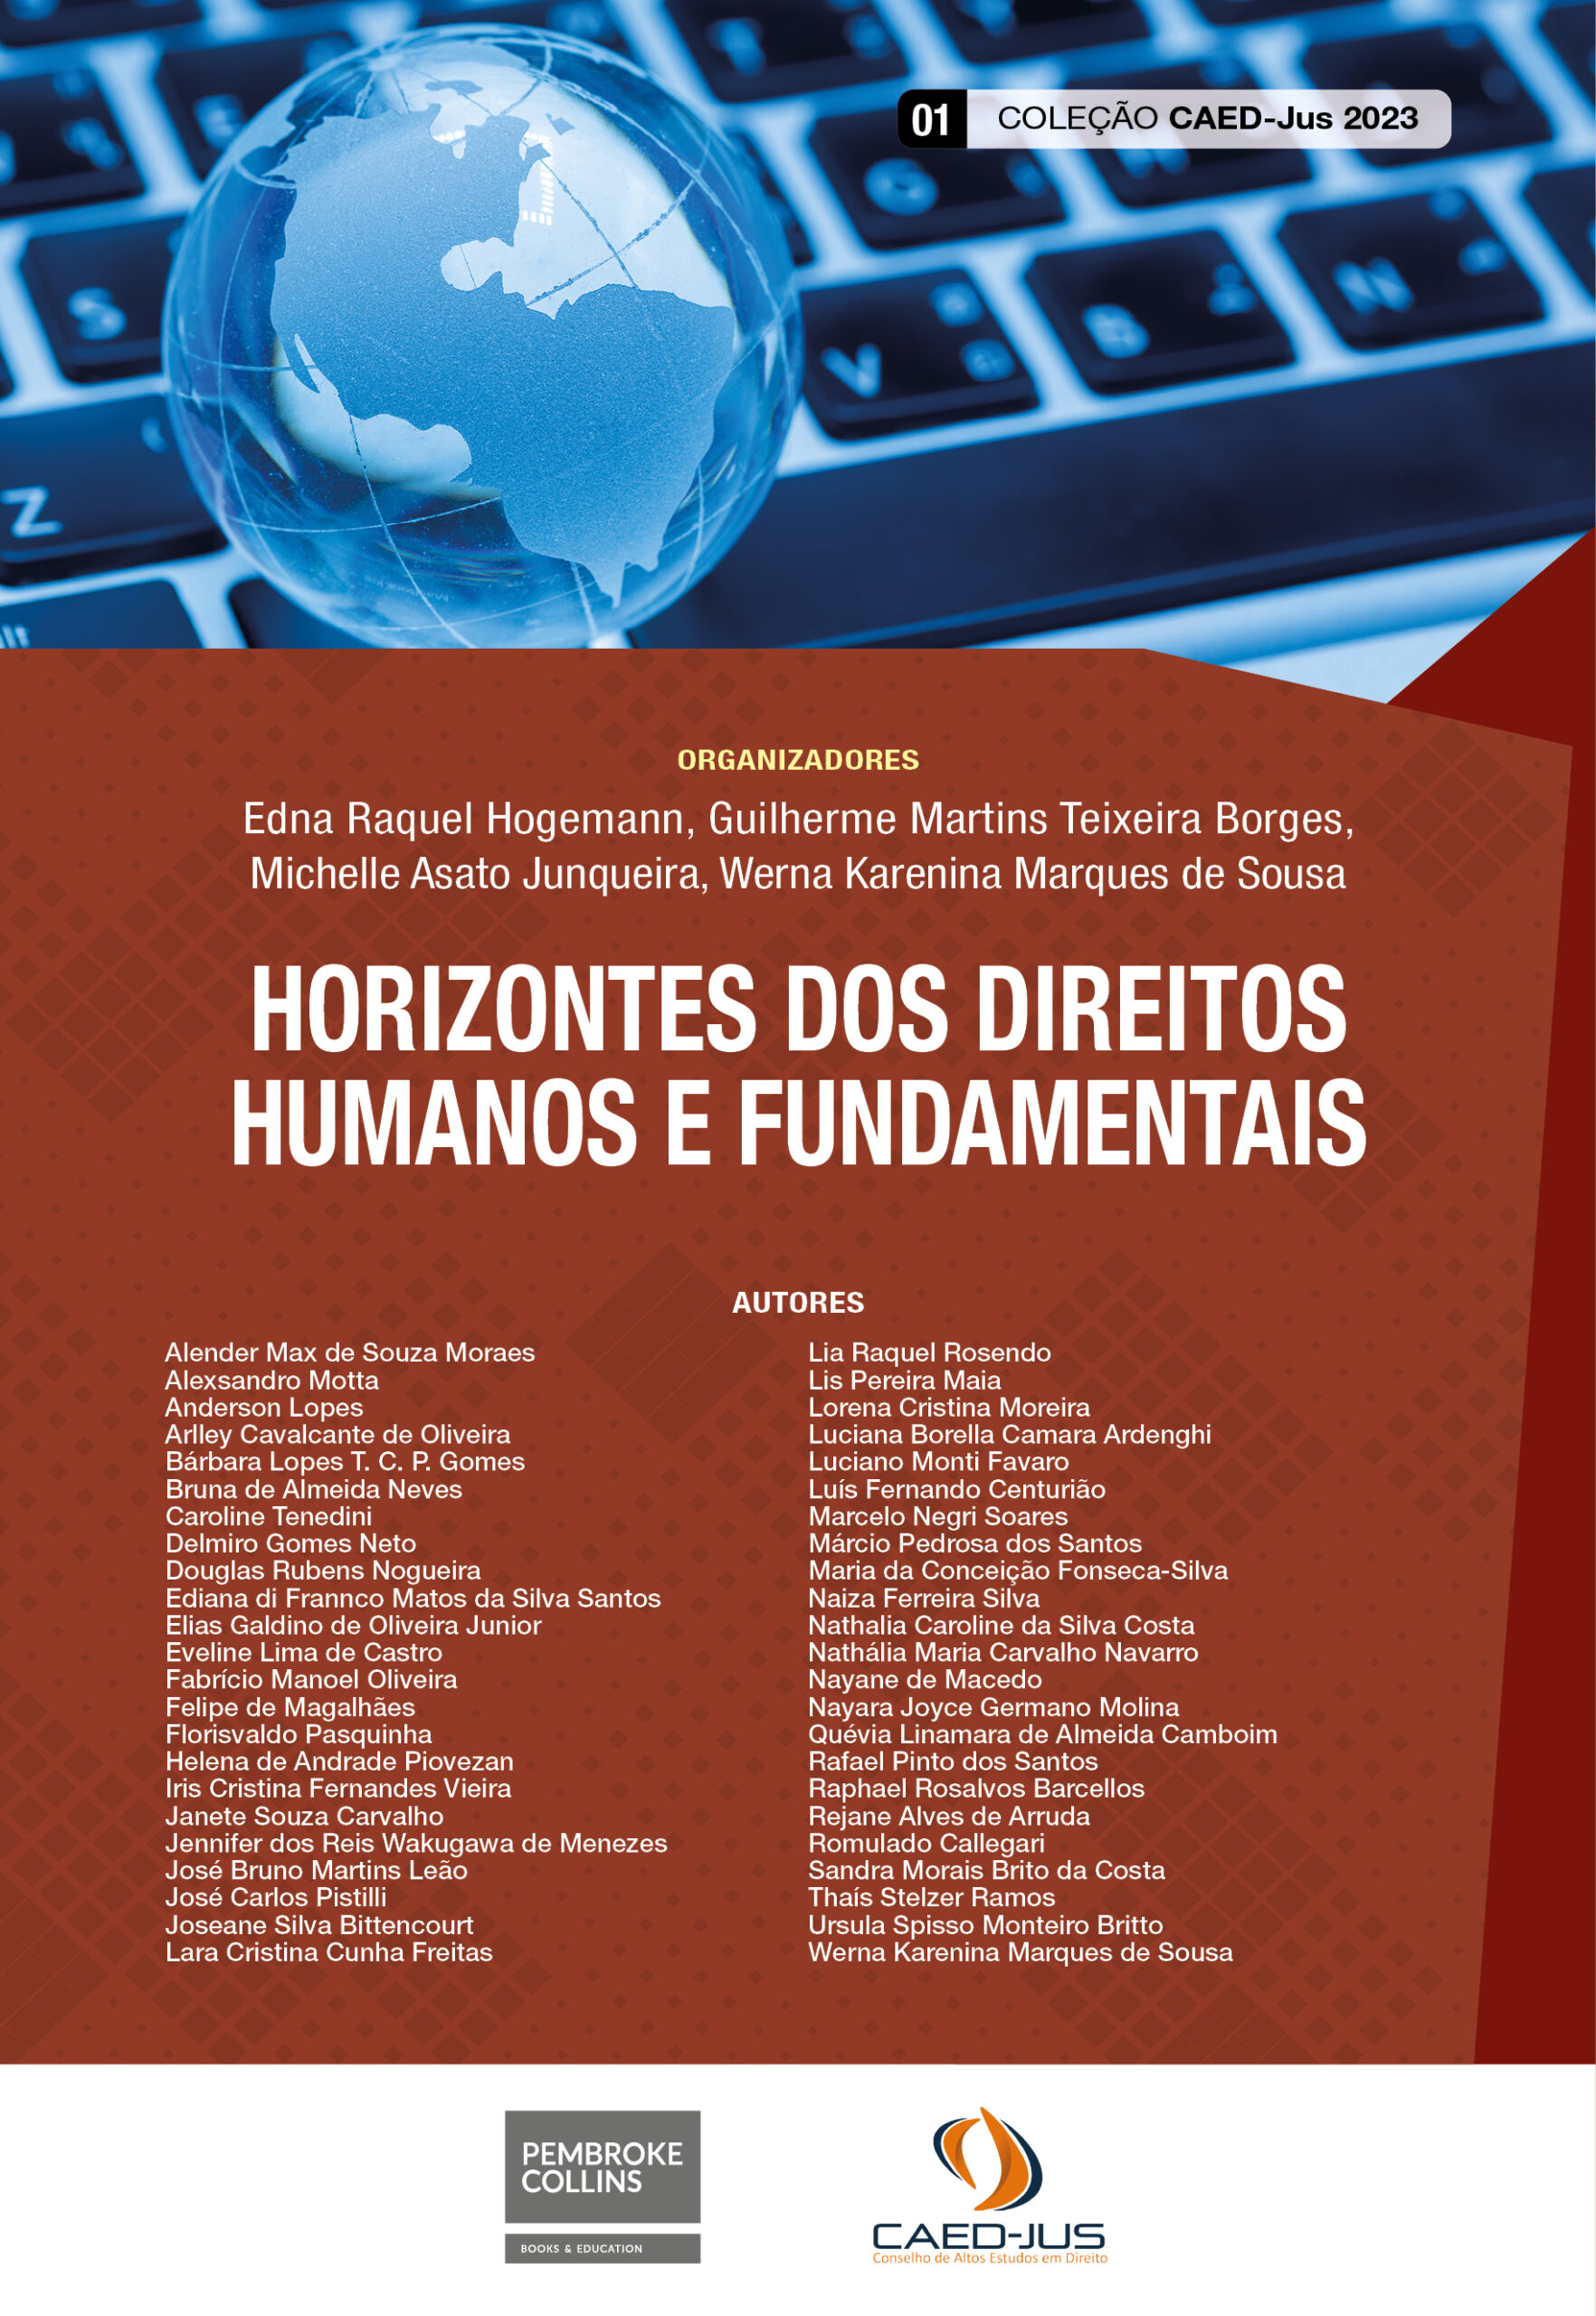 01_CAPA_CAEDJUS 2023_Horizontes dos Direitos Humanos e Fundamentais